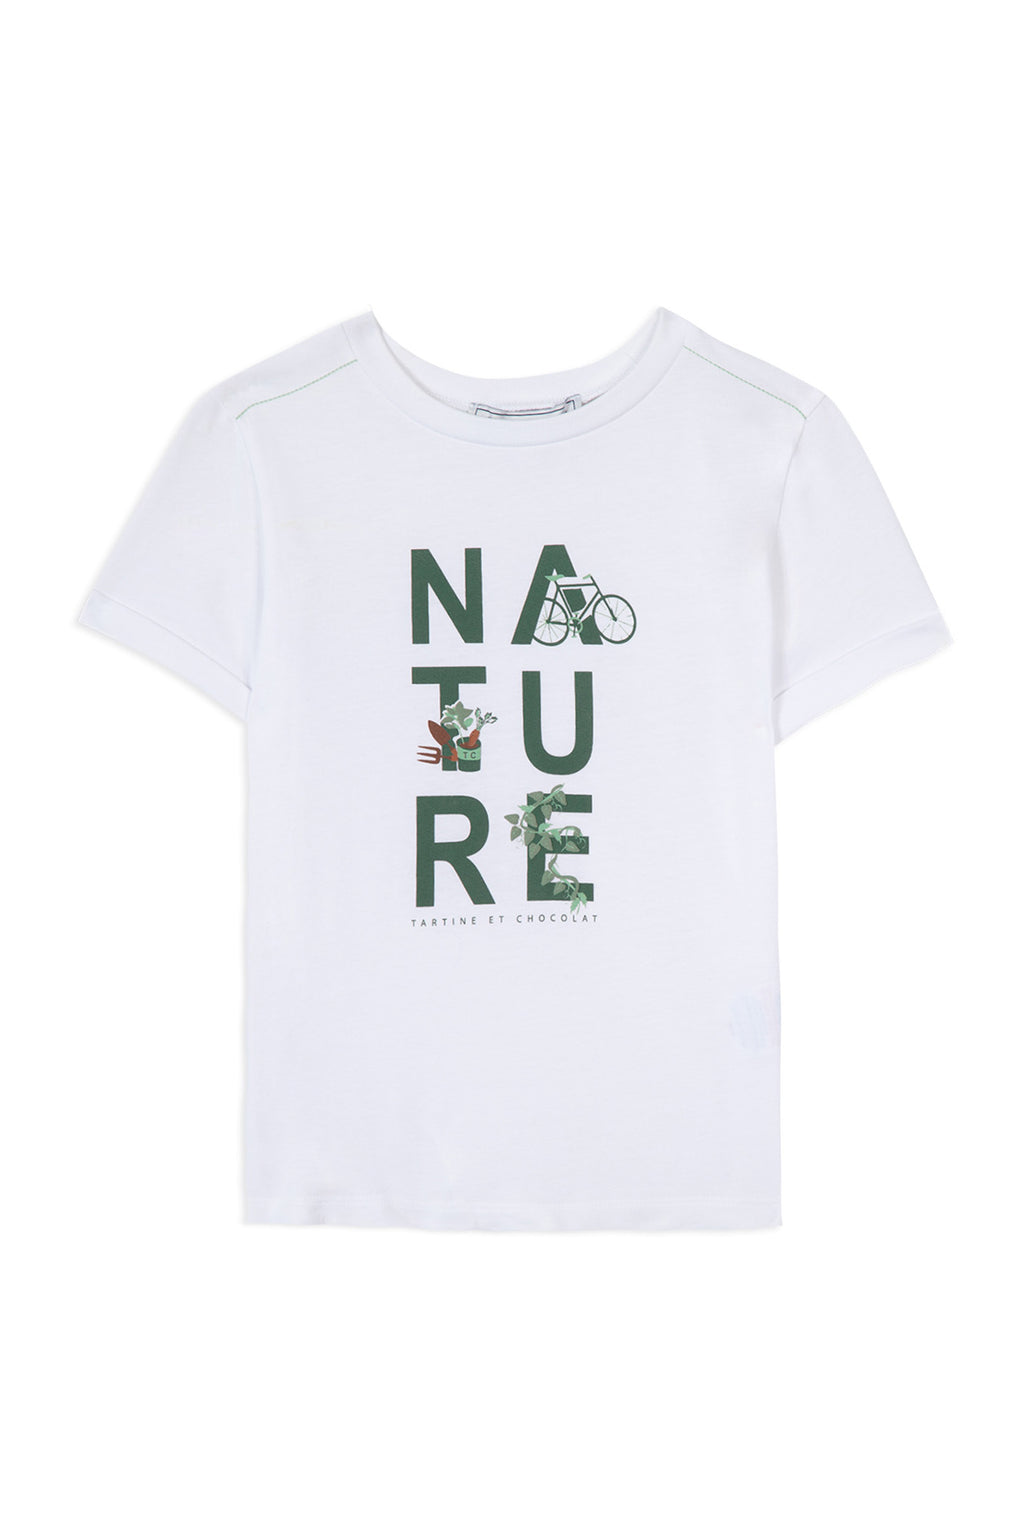 T -Shirt - Grün Naturschutzwasser